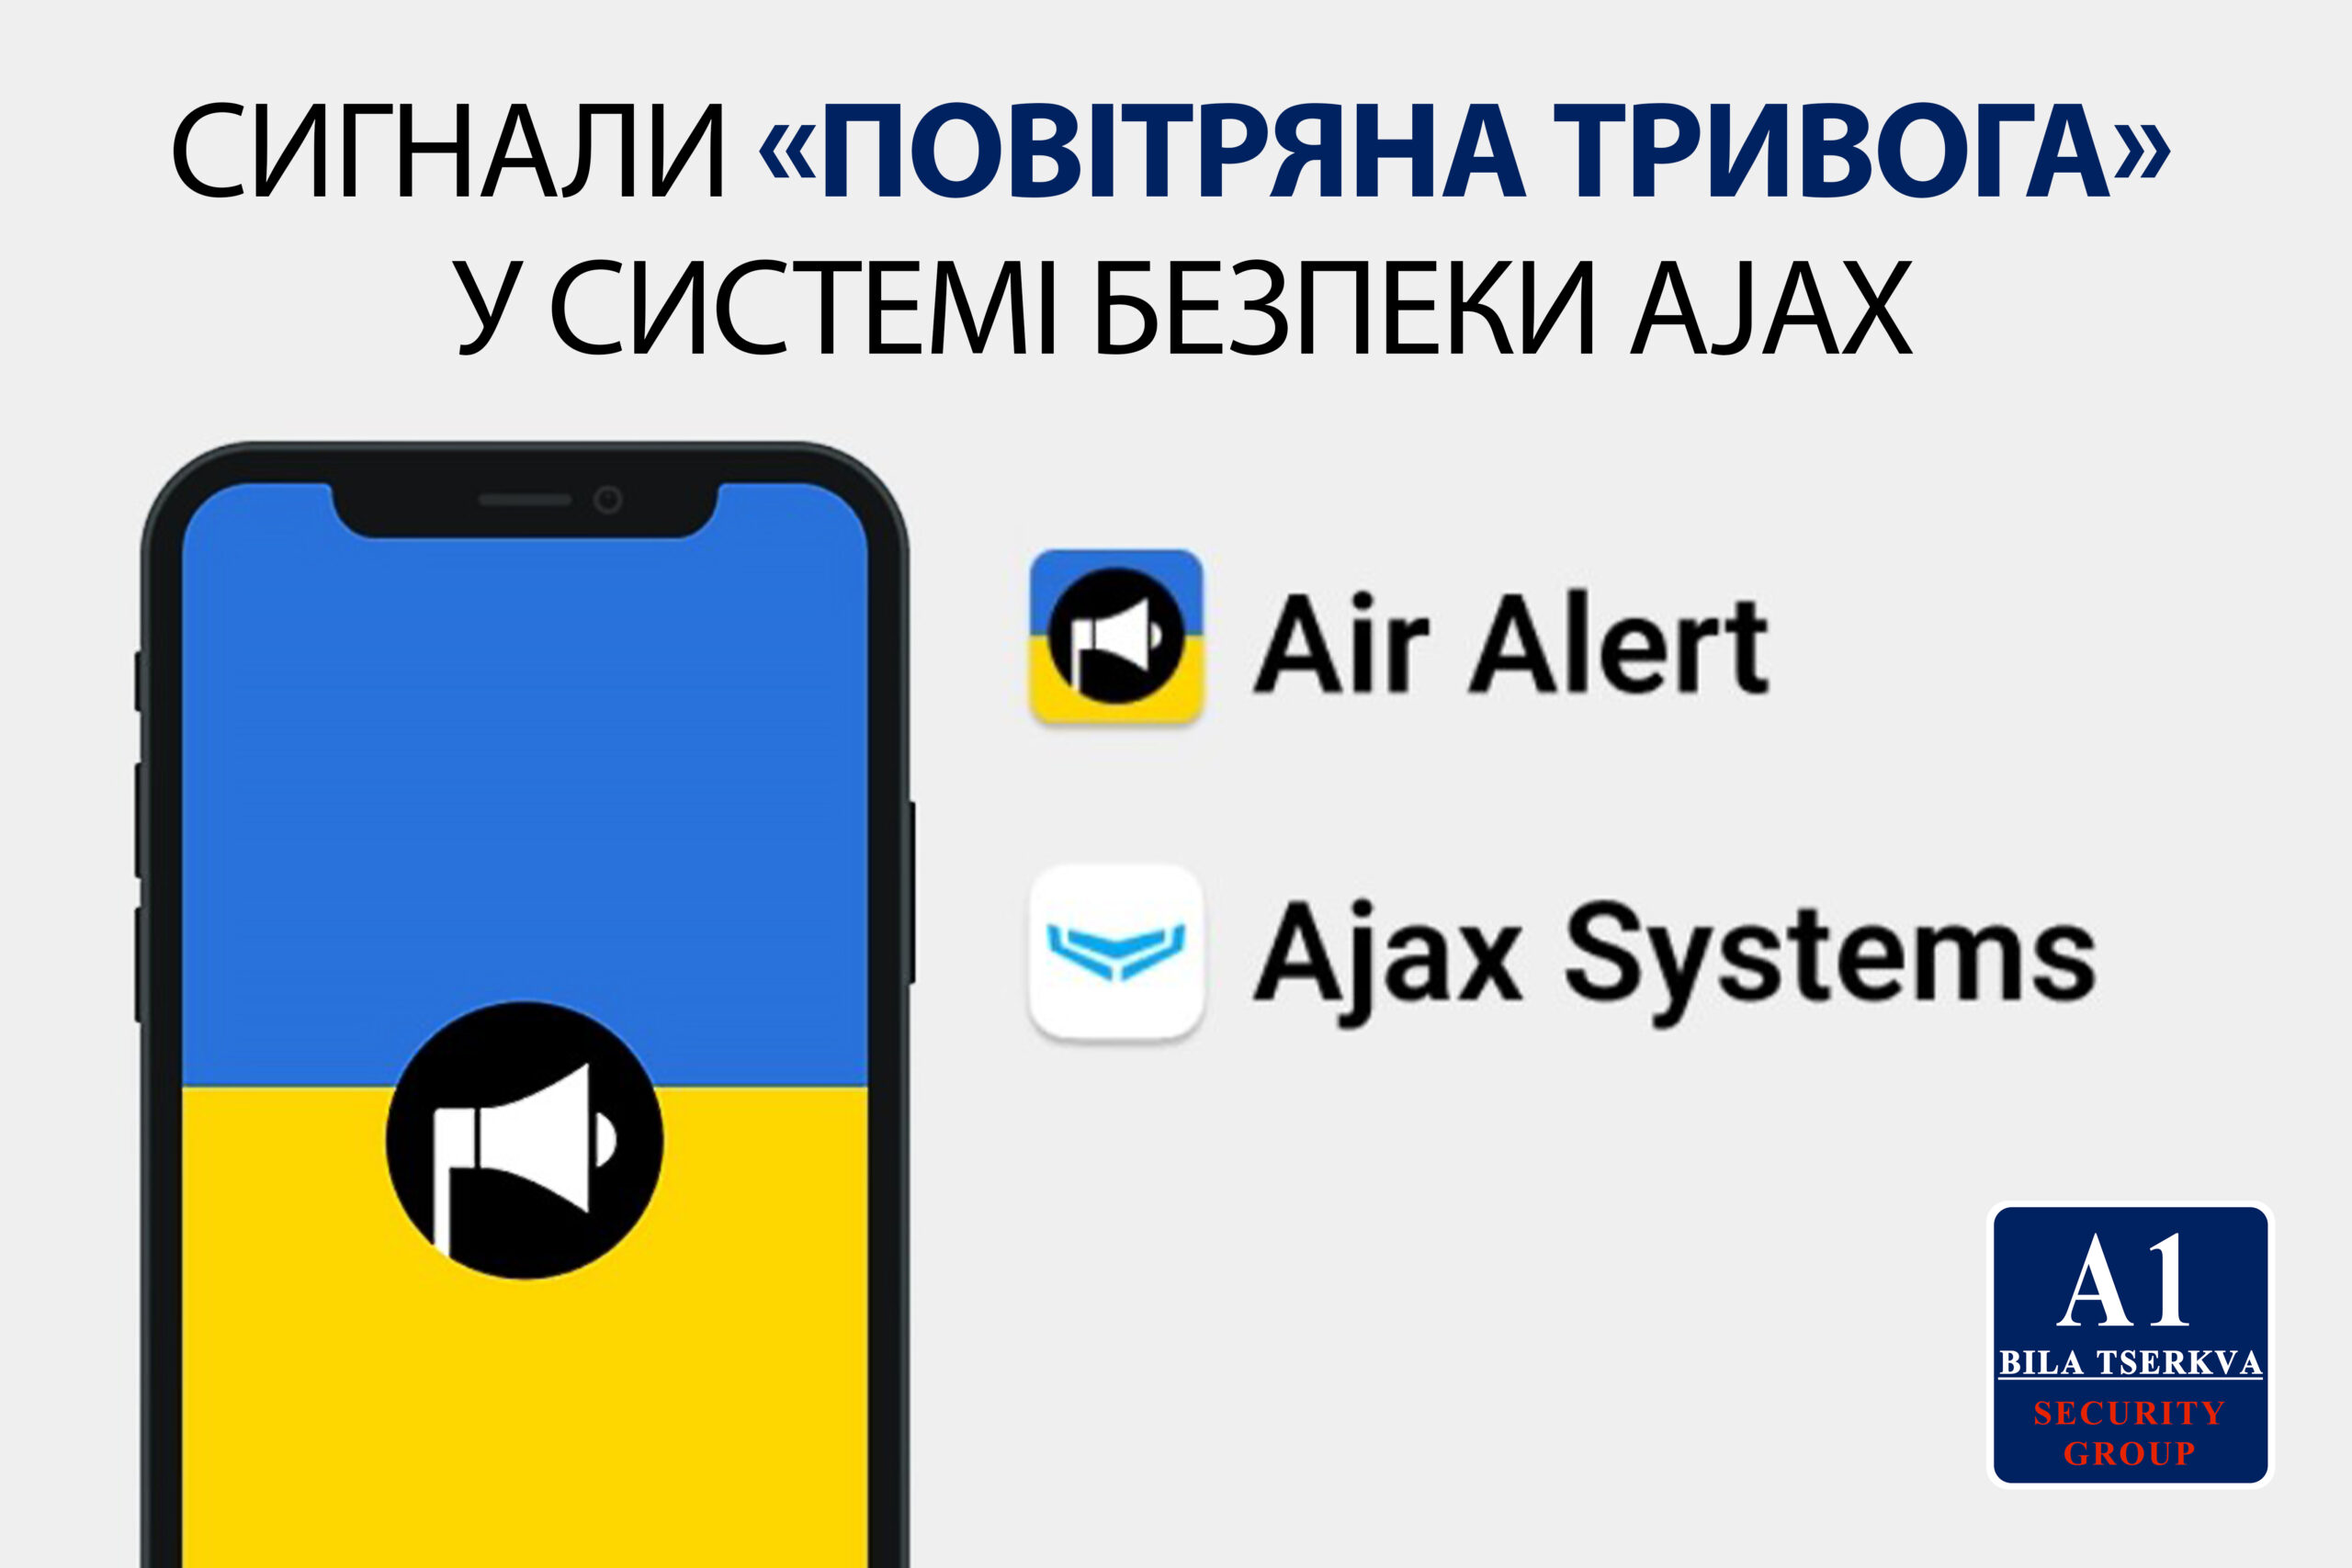 Сигнали повітрянної тривоги в системі безпеки Ajax